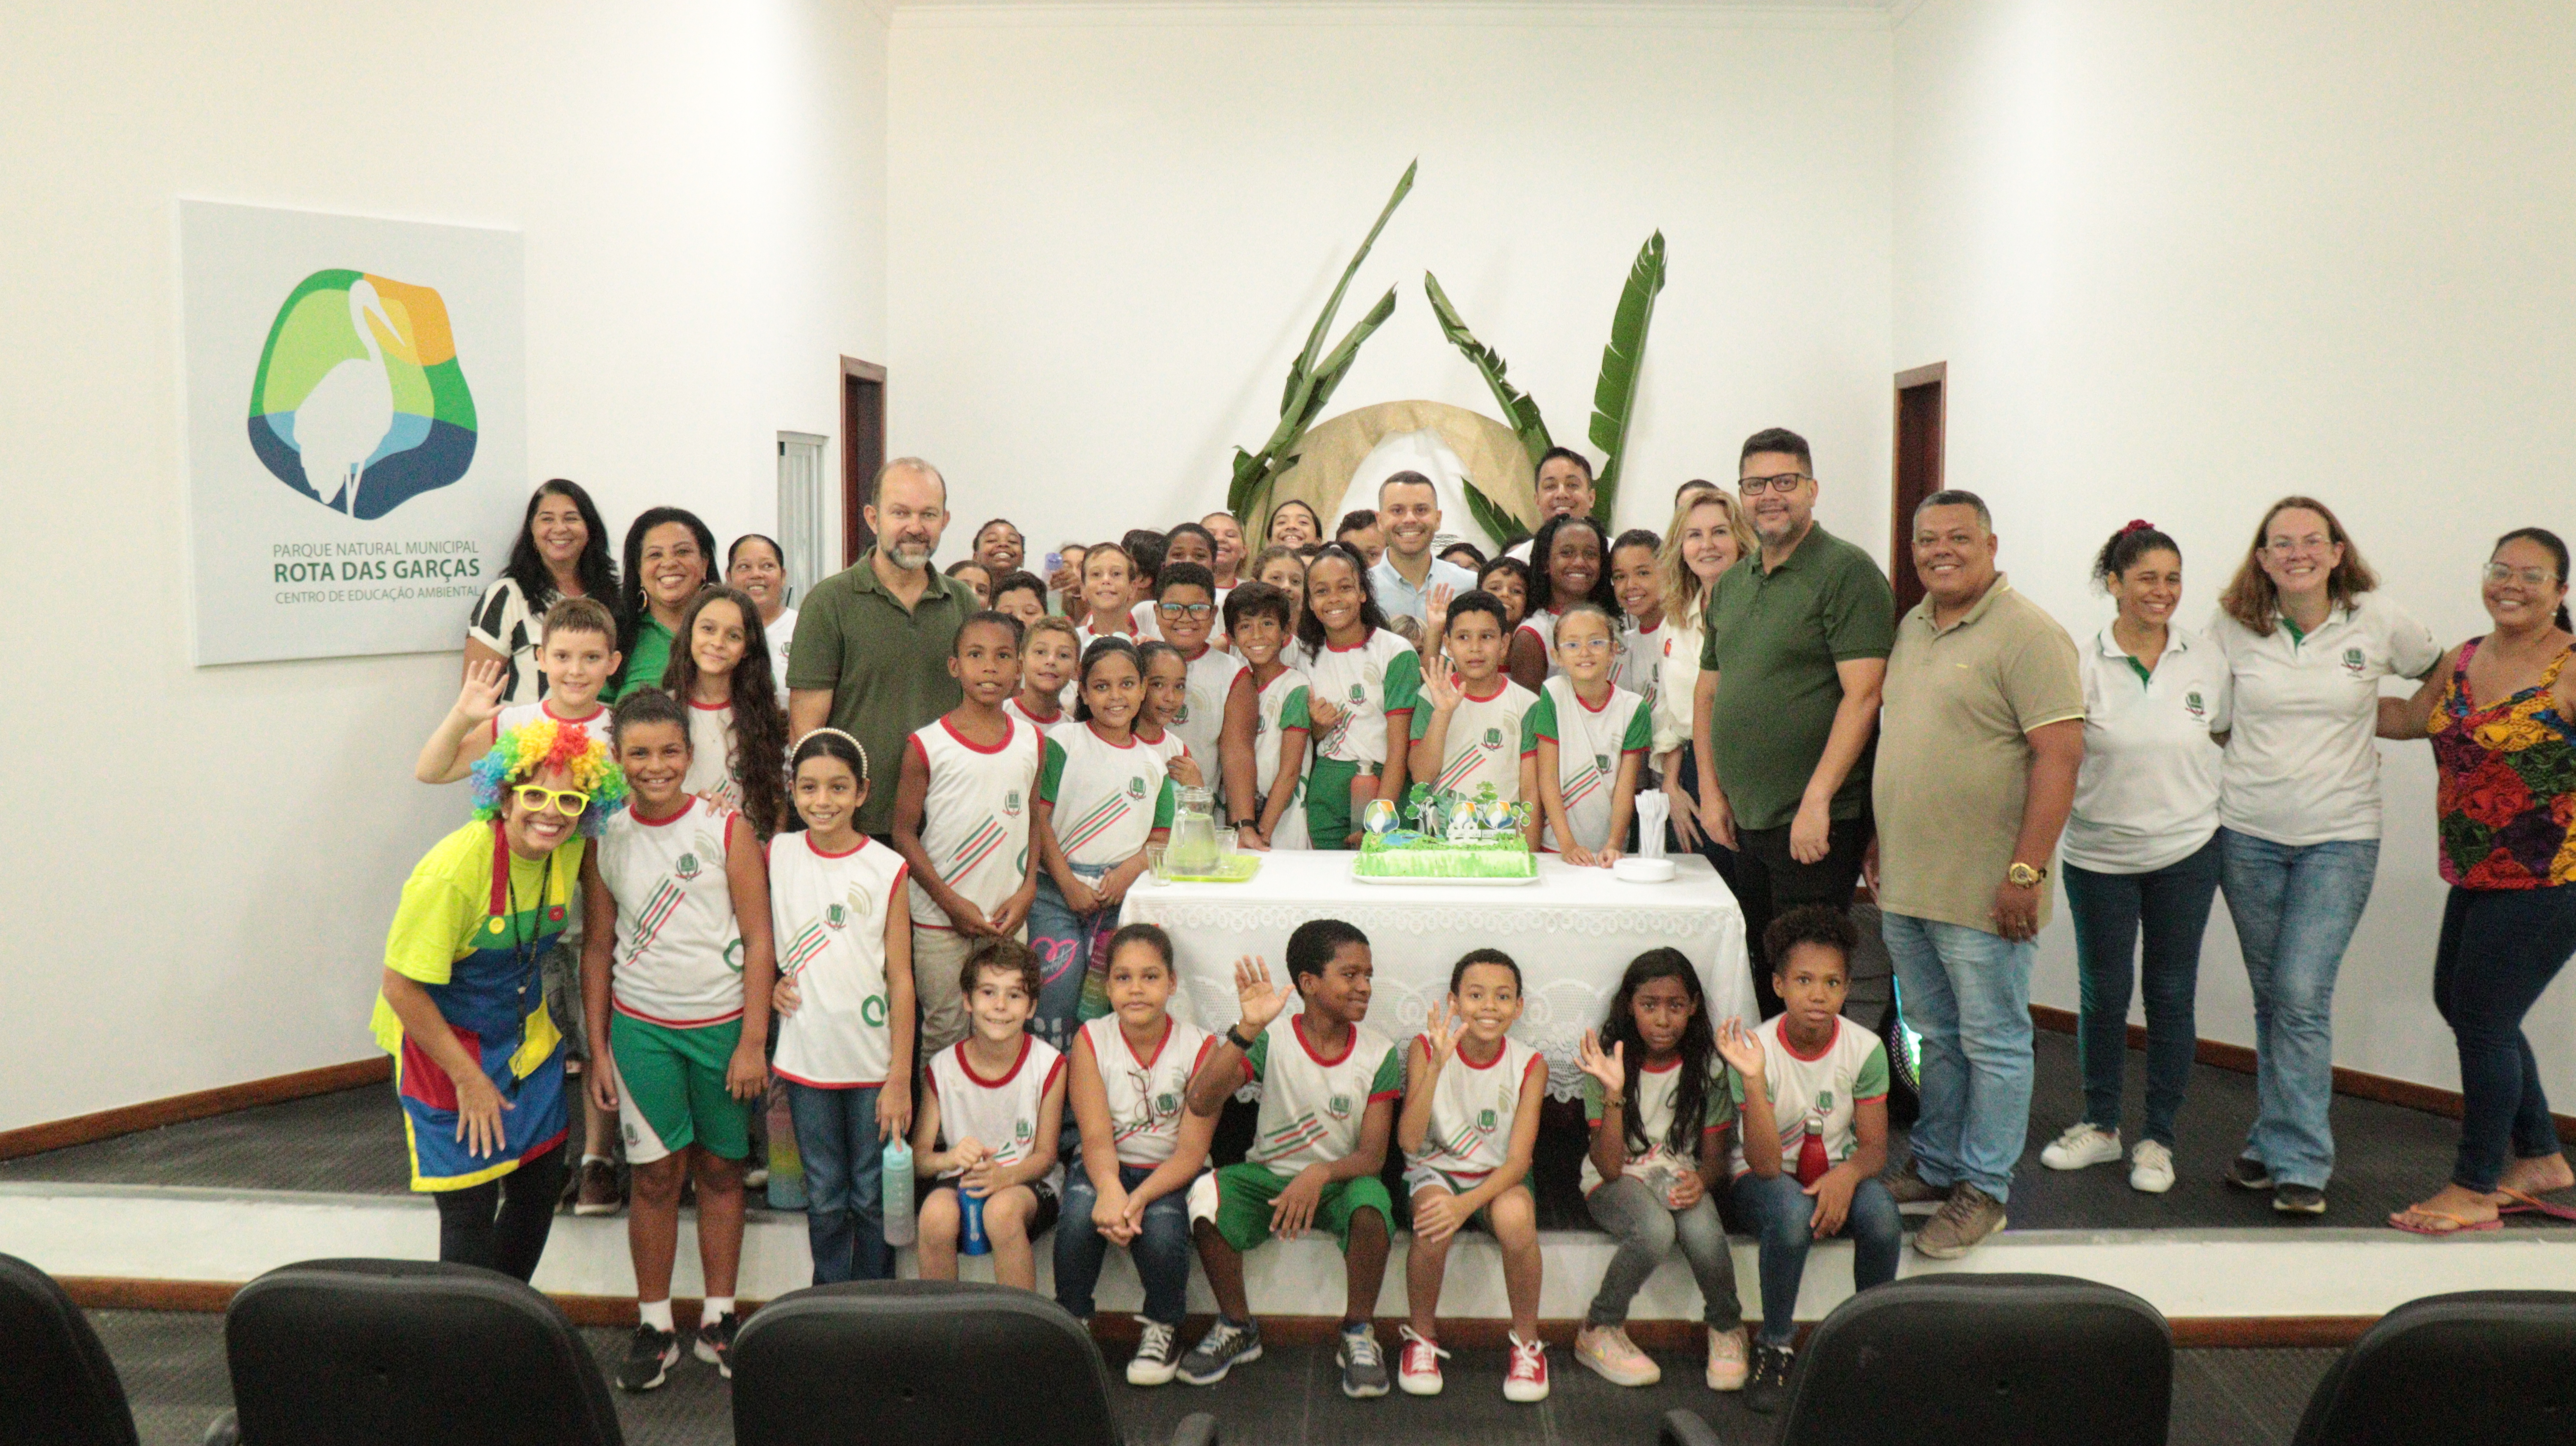 Parque Rota das Garças comemora 22 anos promovendo integração e conscientização ambiental